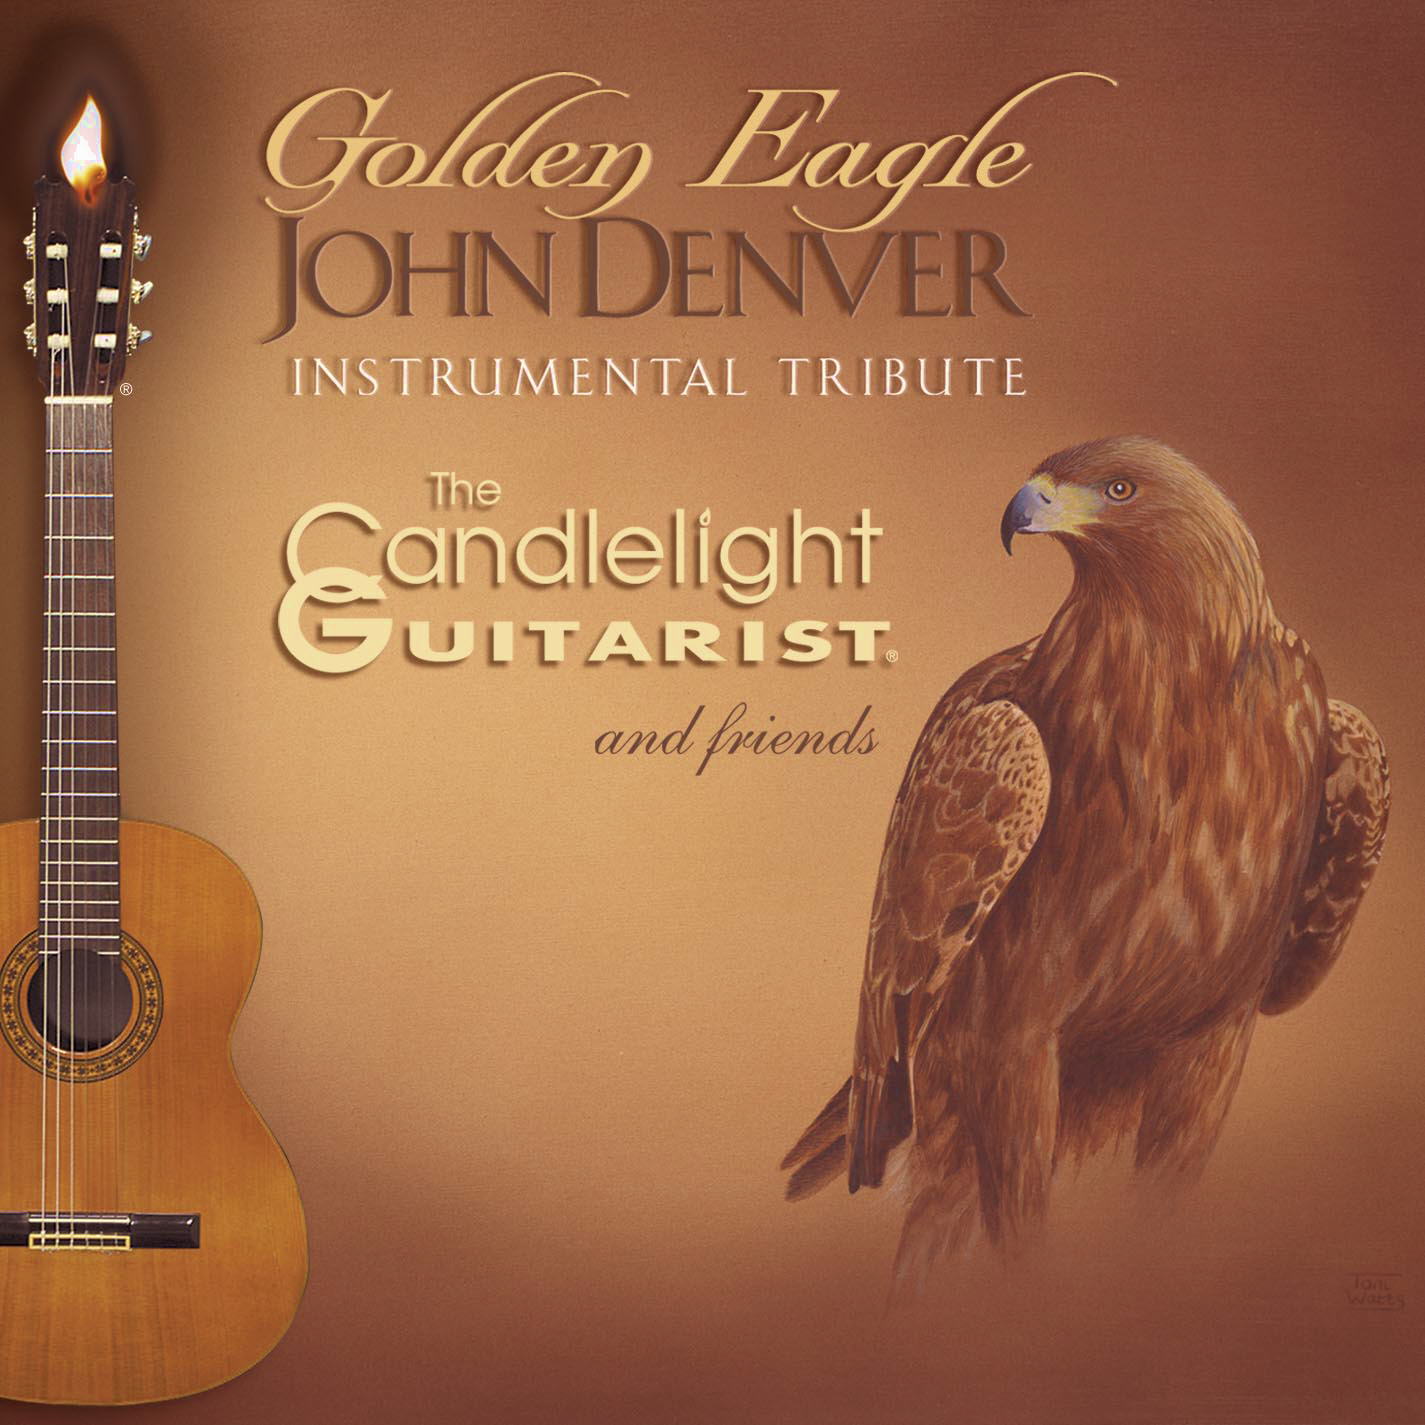 Golden Eagle: JOHN DENVER Instrumental Tribute by The Candlelight Guitarist ®